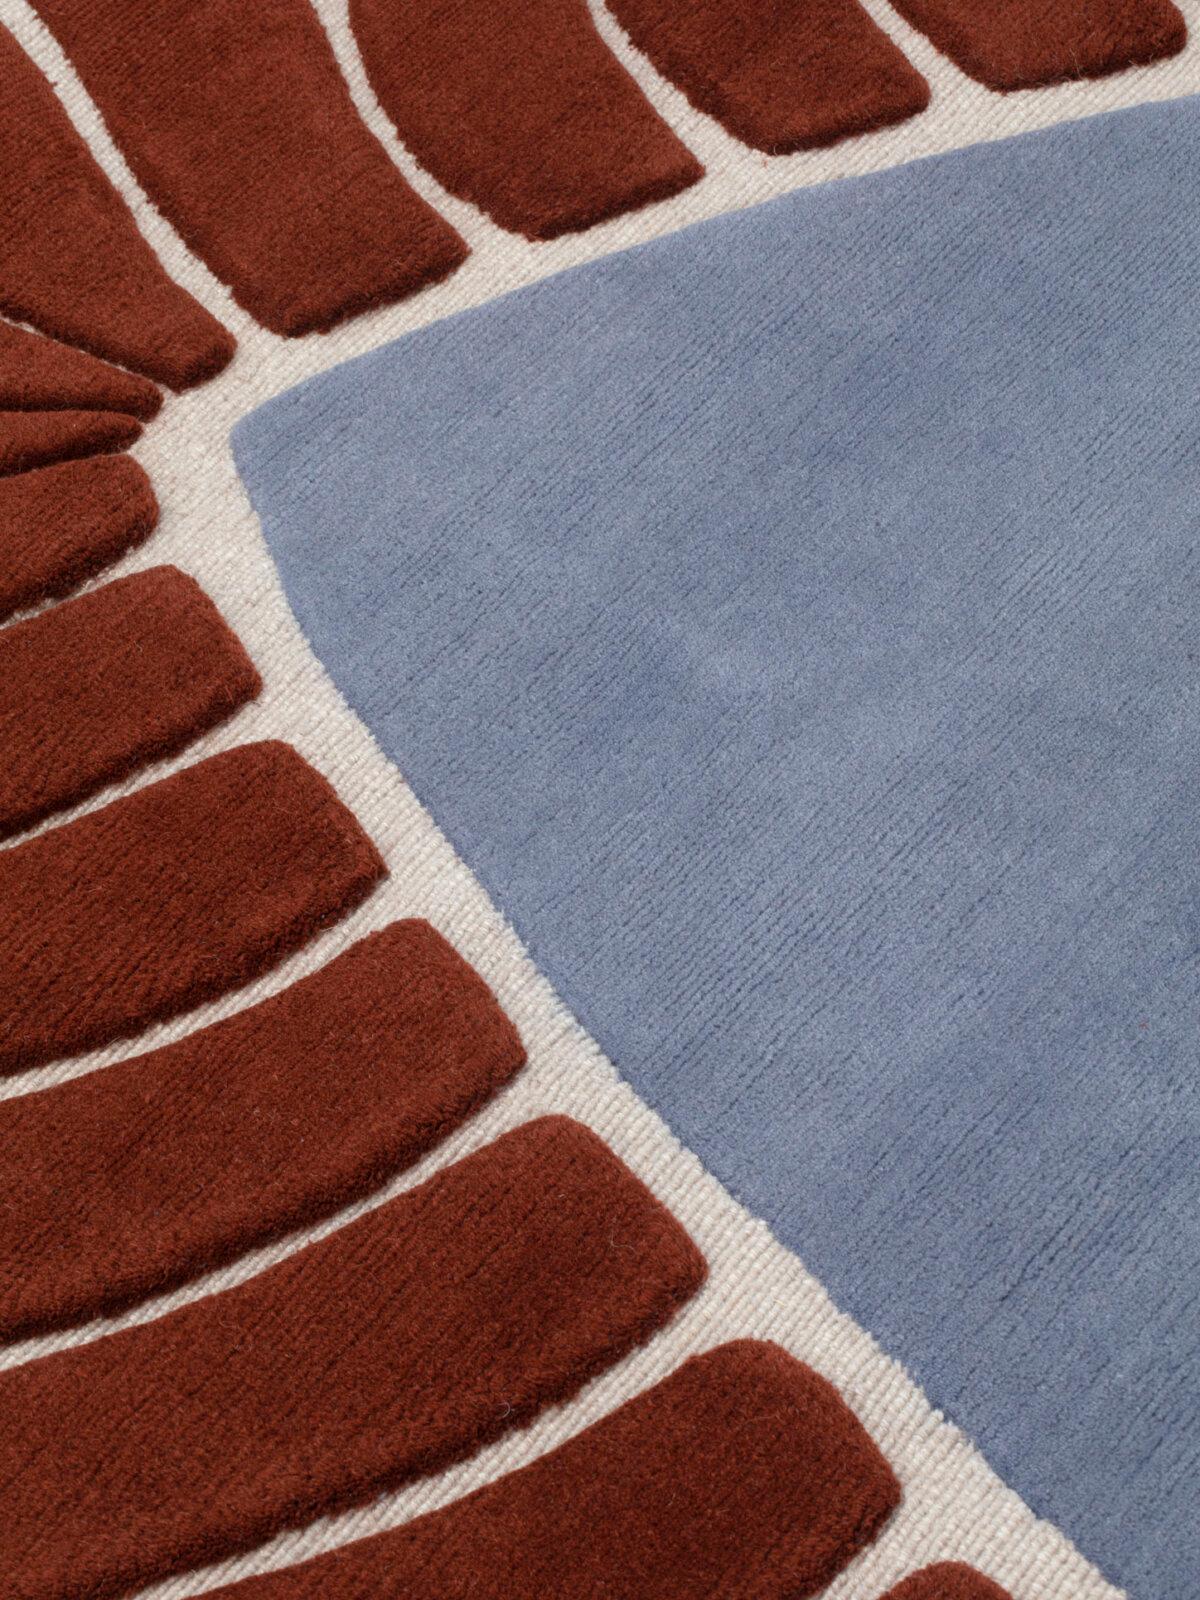 Contemporary cc-tapis M’AMA NON M’AMA Medium handmade rug by Patricia Urquiola For Sale